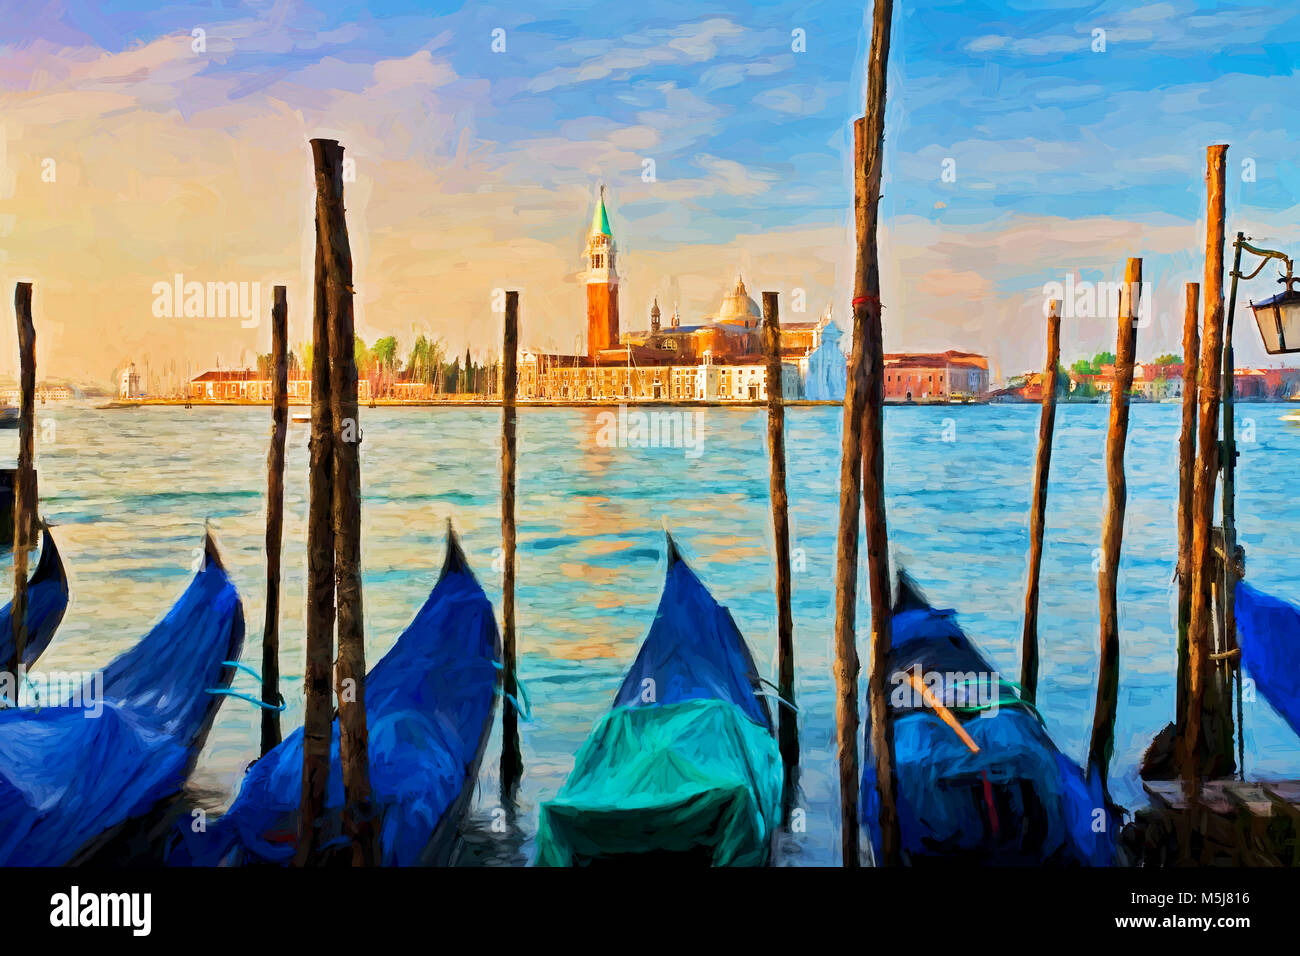 La peinture impressionniste de gondoles amarré à Molo San Marco à Venise Italie avec San Giorgio Maggiore en arrière-plan Banque D'Images